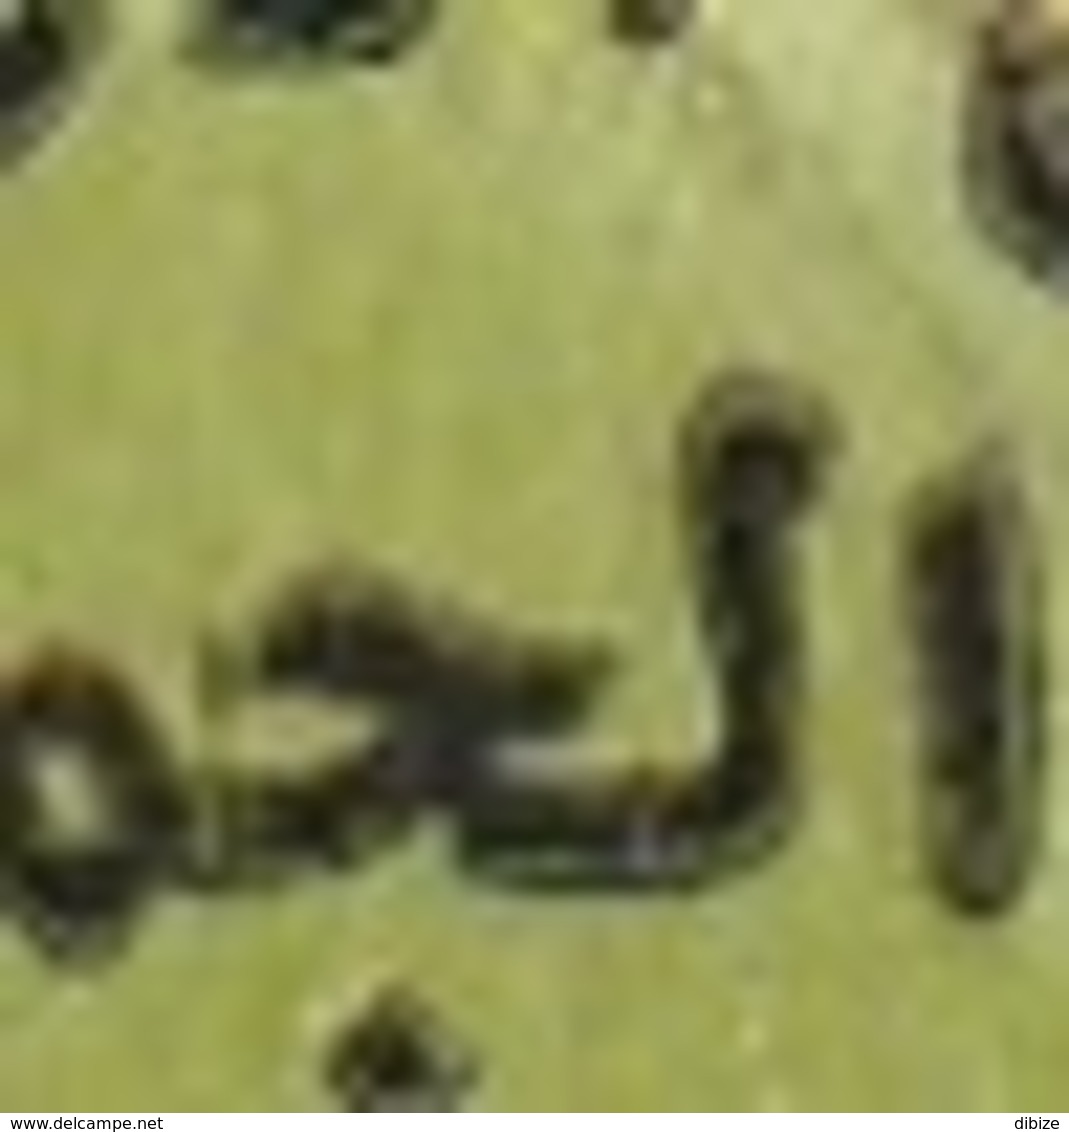 Maroc. Coin Daté De 6 Timbres, Poste Aérienne Yvert N° 124 De 1987. Surcharge Arabe. Variétés. Erreurs. - Errores En Los Sellos